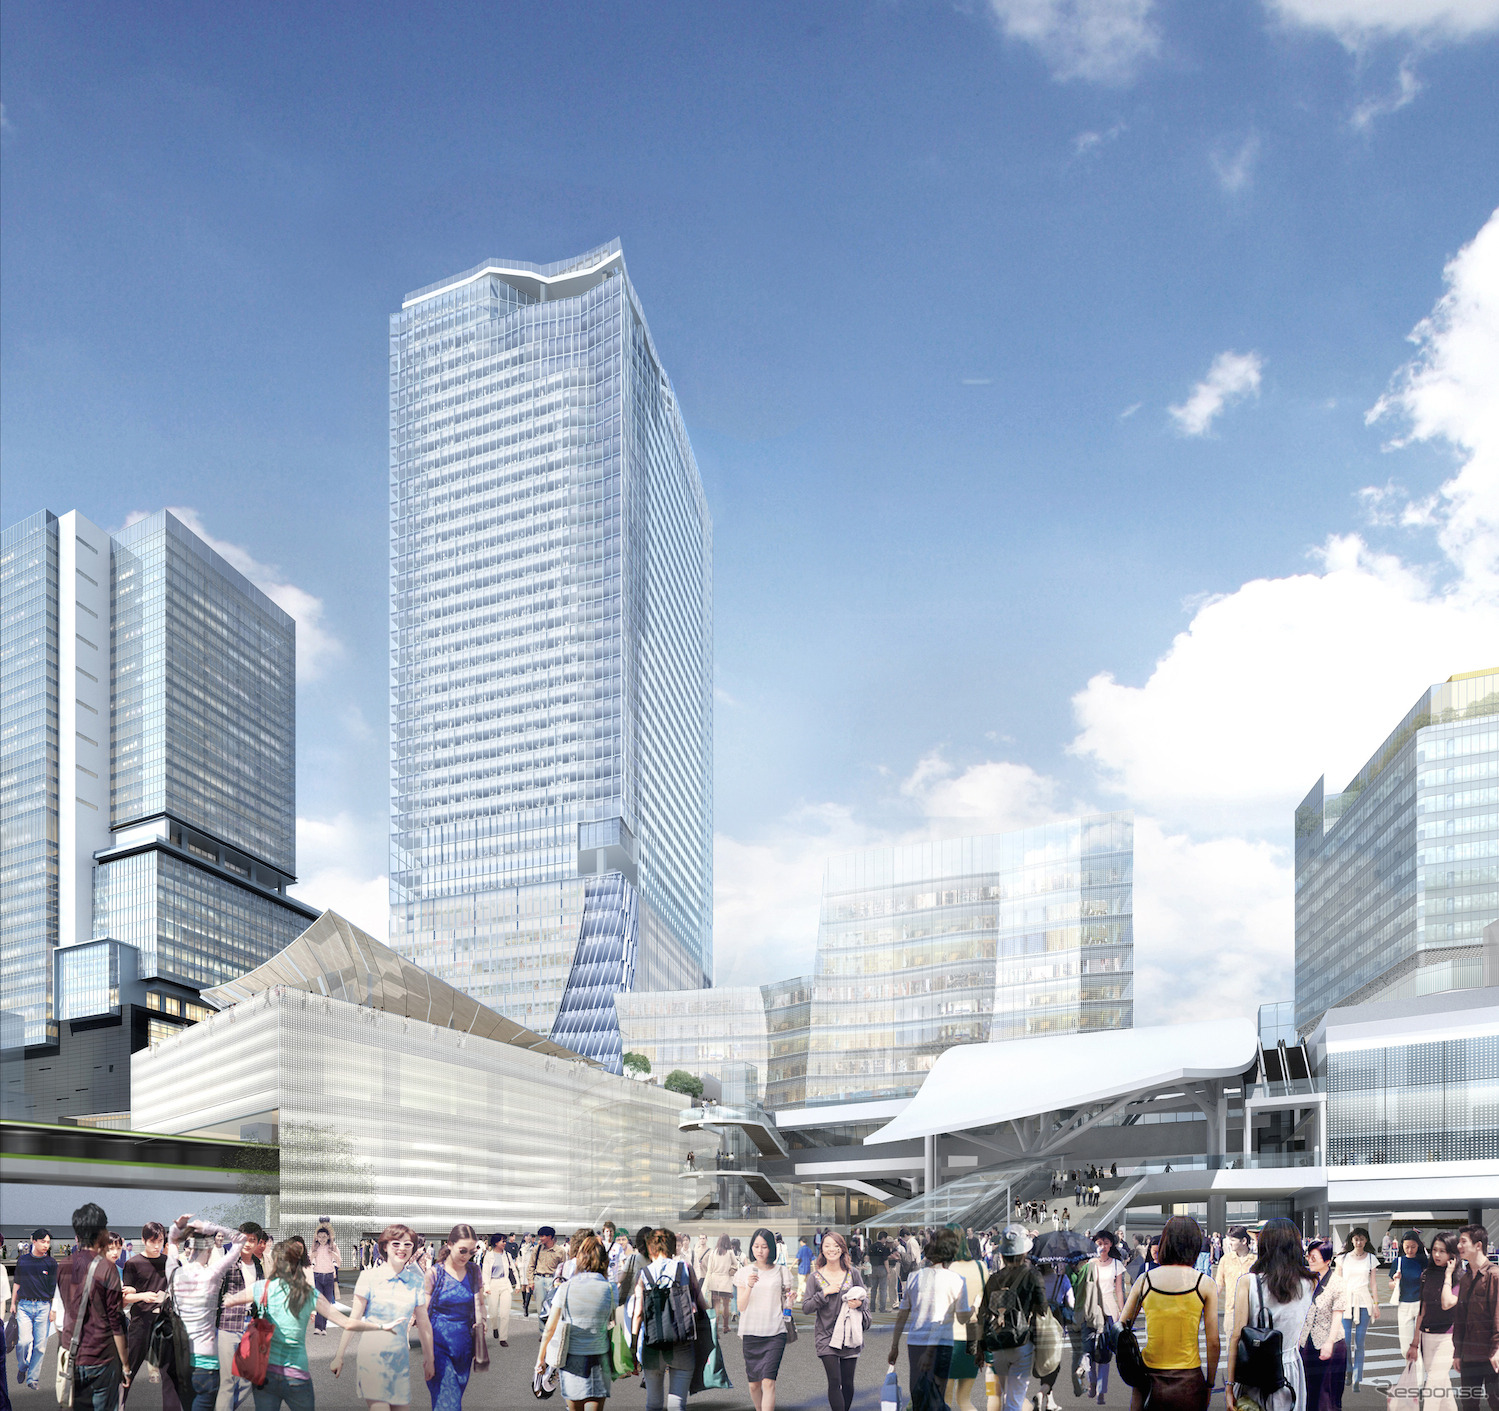 東急・JR東日本・東京メトロは渋谷で建設中の高層ビル屋上に屋外展望施設を設けると発表。中央に見える高層ビルが屋外展望施設を設ける東棟